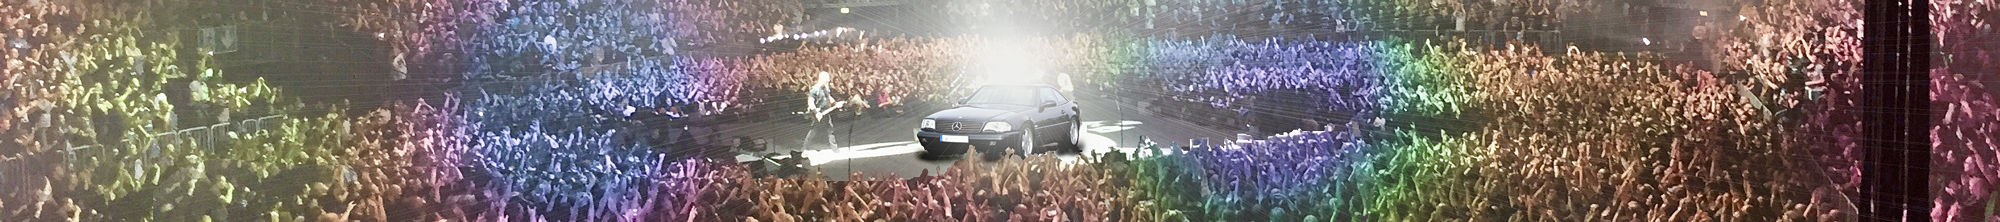 Mercedes SL R129 Final Edition - Der Rockstar unter den R129